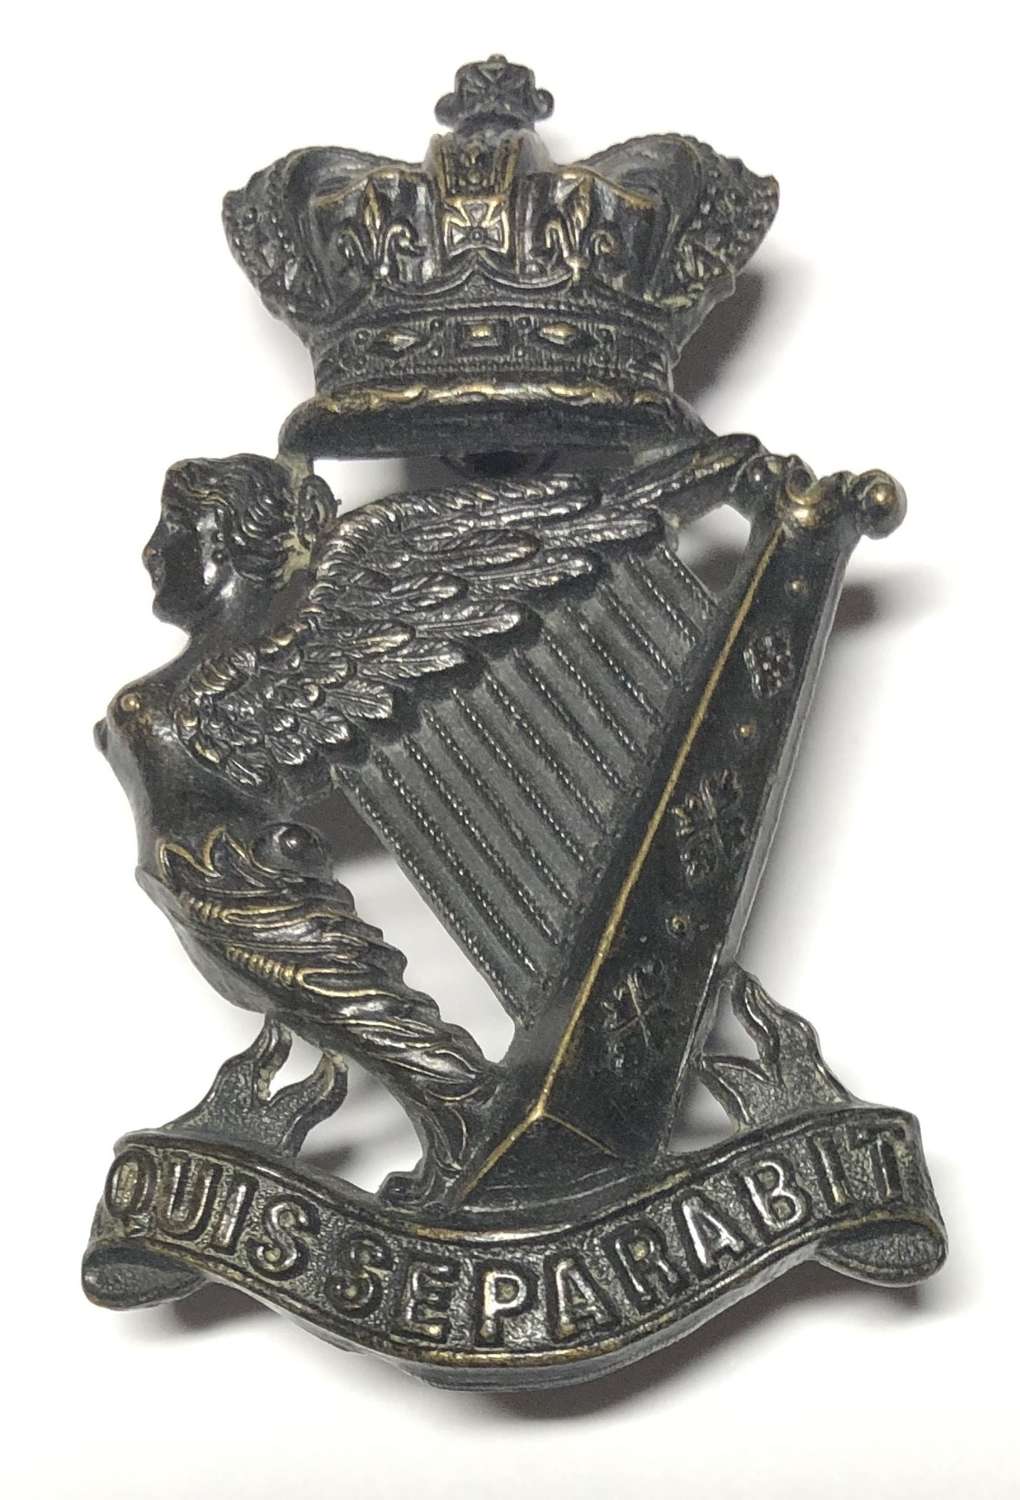 Royal Irish Rifles Victorian pagri badge circa 1881-1901